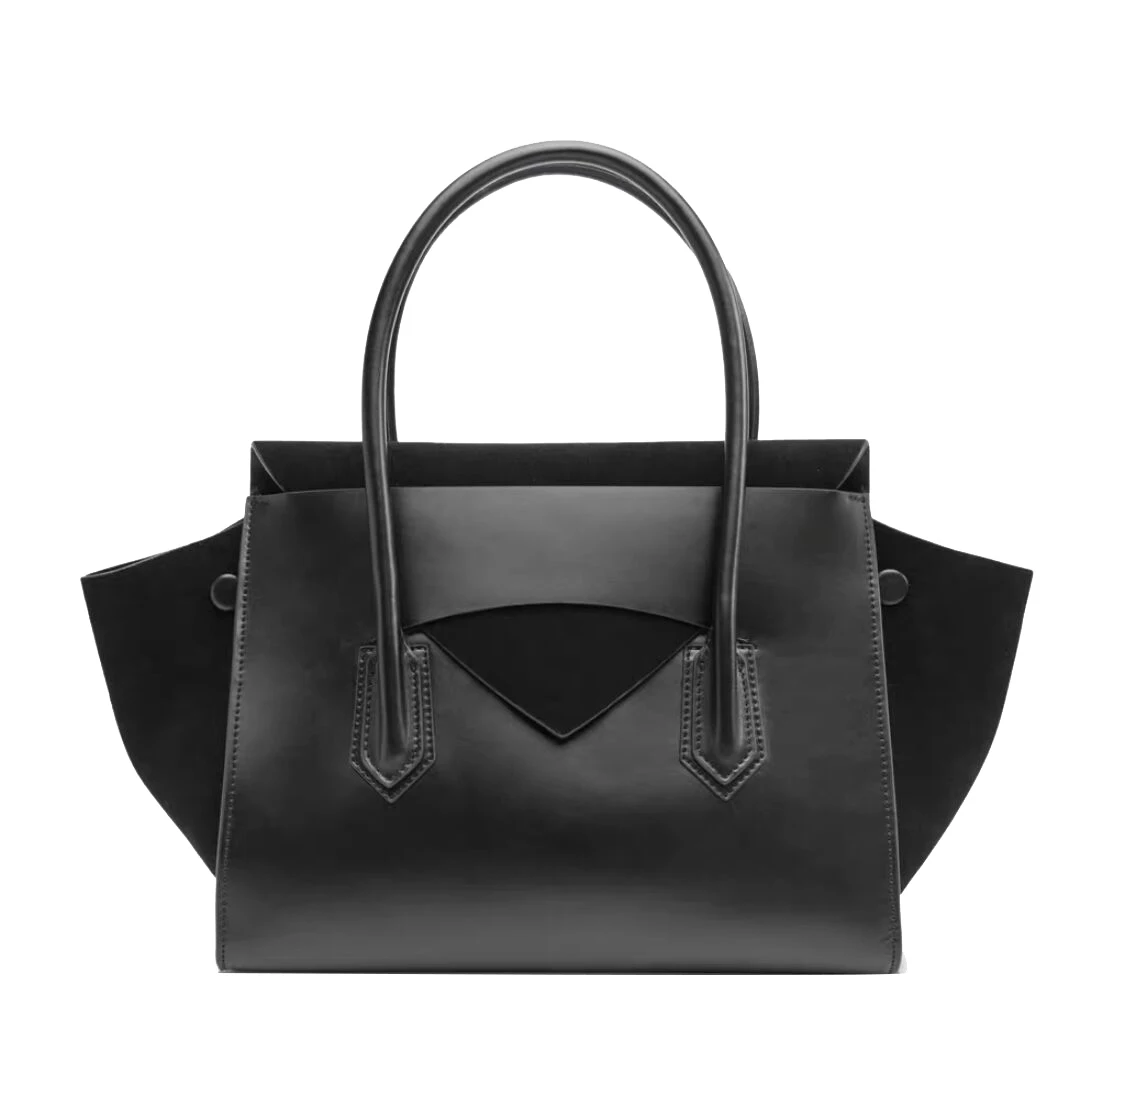 

KALANTA OEM 2022 fashion sac bolsas with custom women tote hand bags leather bolsos ladies purses and handbags for luxury logo